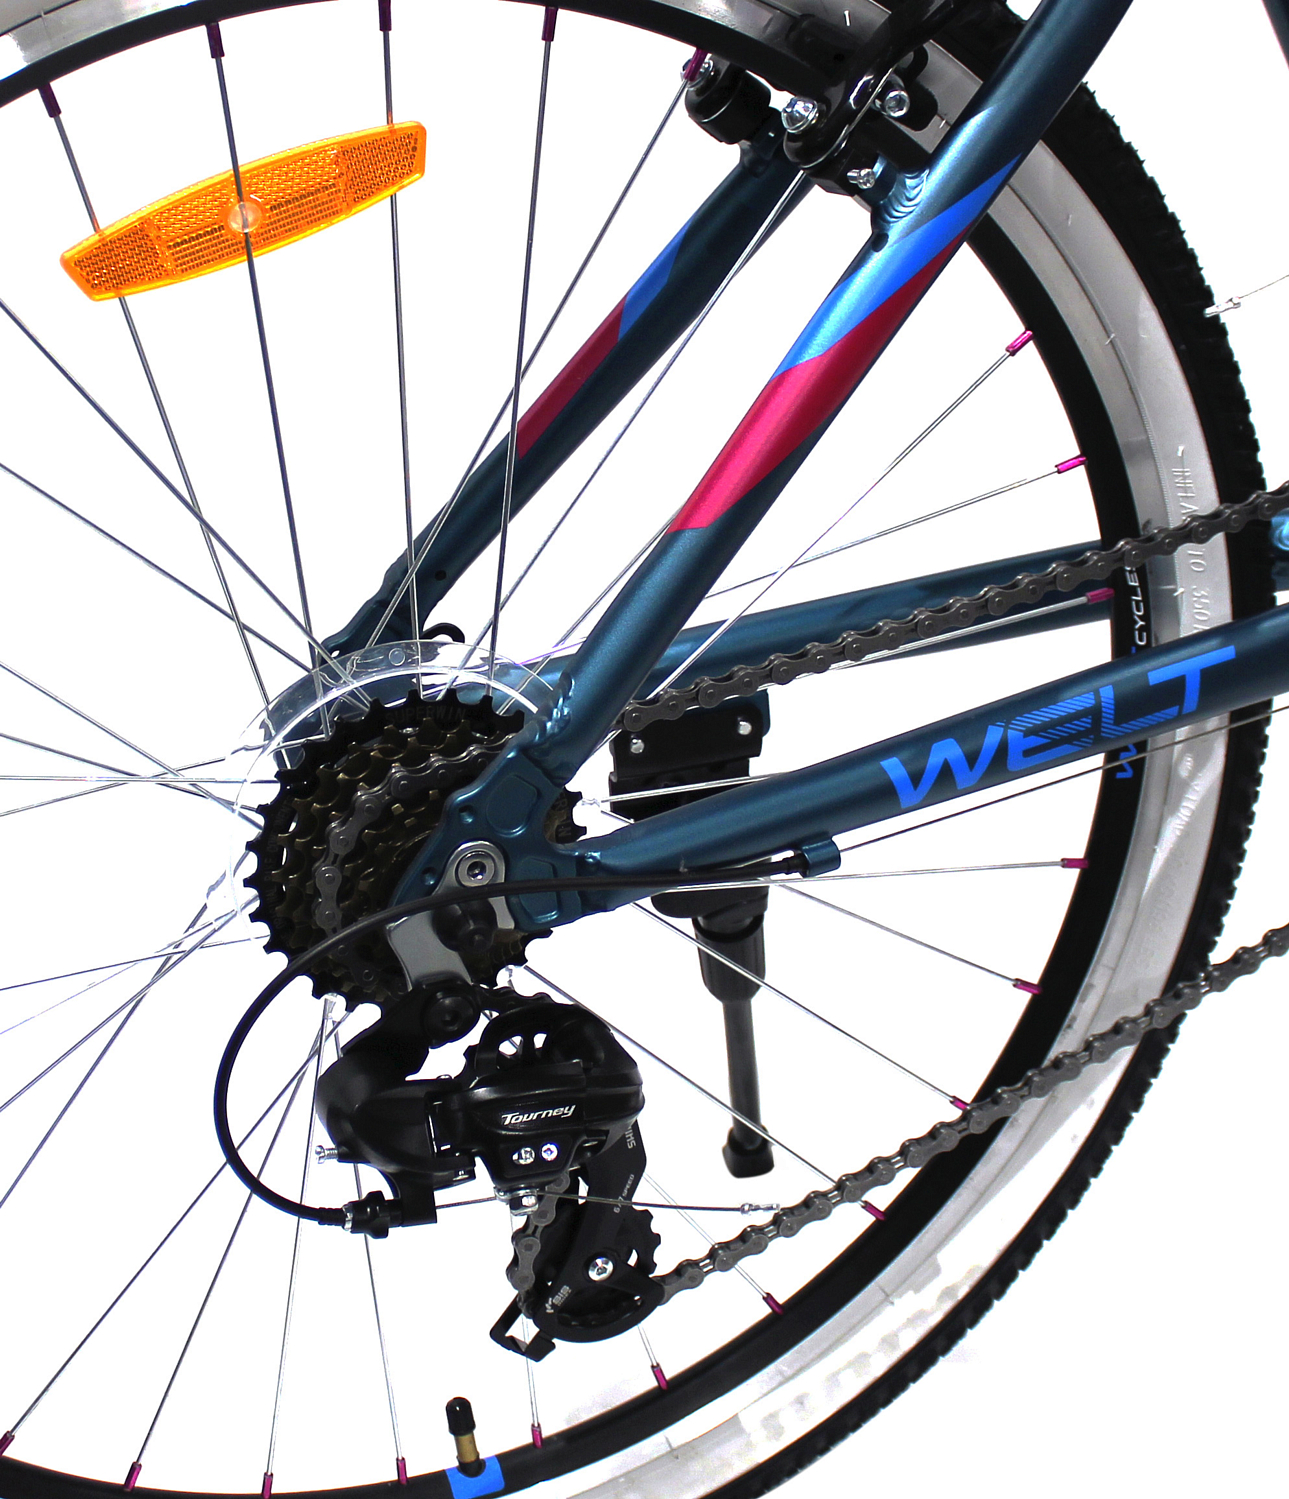 Велосипед Welt Edelweiss 1.0 HD 26 2020 Matt Dark Ocean Blue/Pink